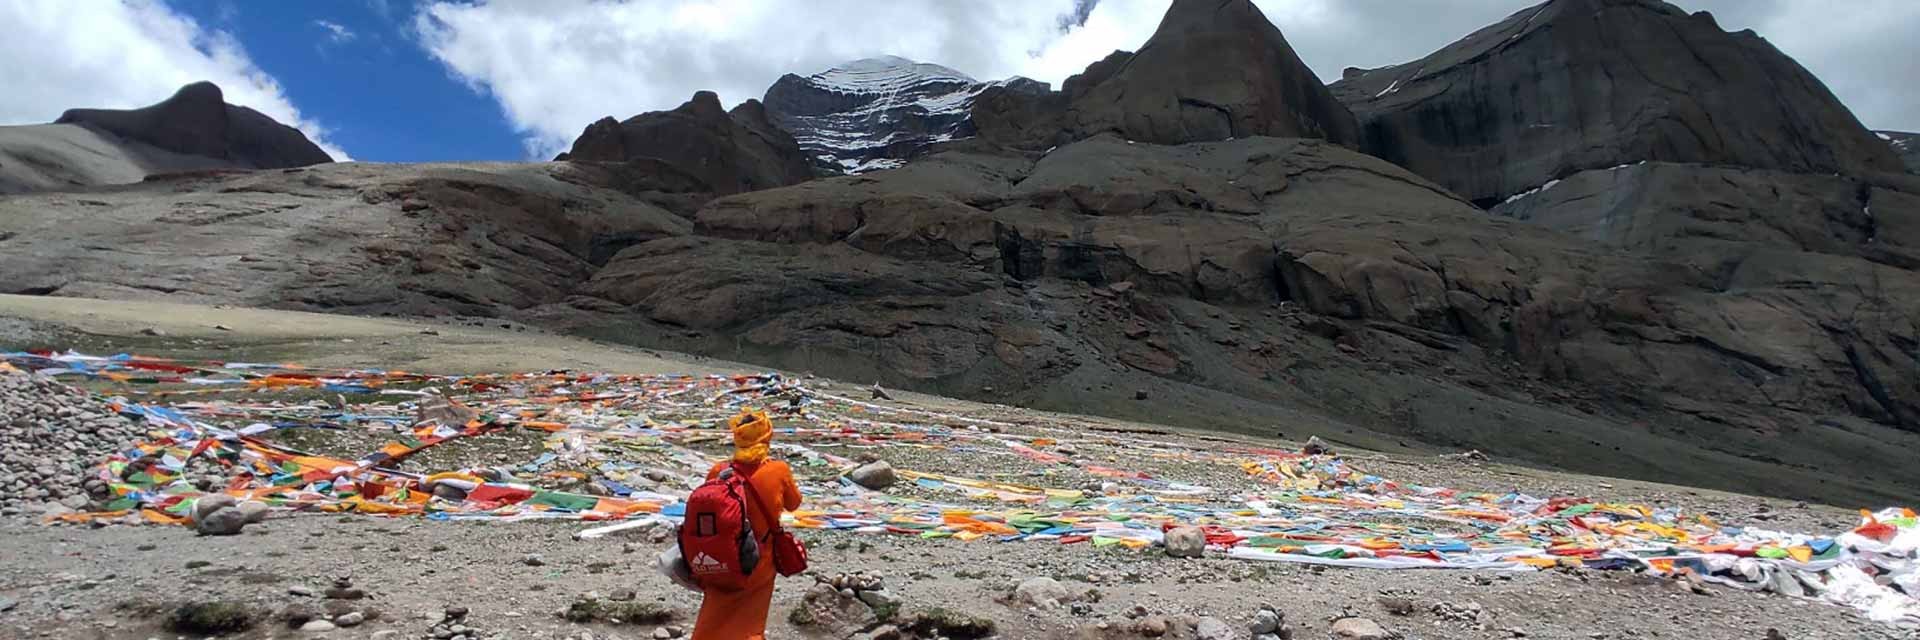 Kailash-yatra-via-lhasa